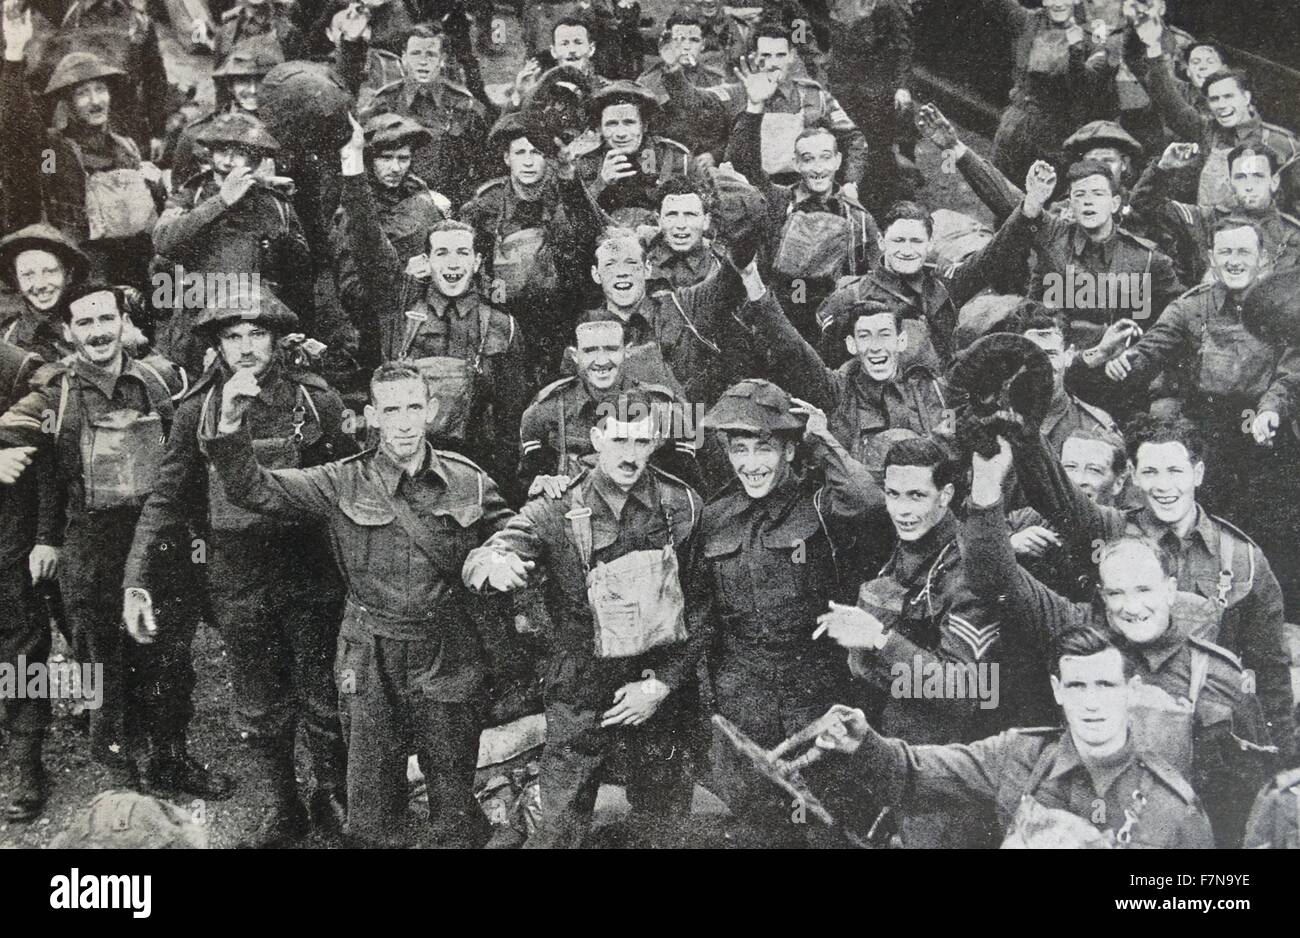 Foto von britischen und französischen Truppen singen die alten Lieder des Krieges. Zum zweiten Mal segelte die British Expeditionary Force nach Frankreich, um ihre französischen Verbündeten zu helfen. Datierte 1939 Stockfoto